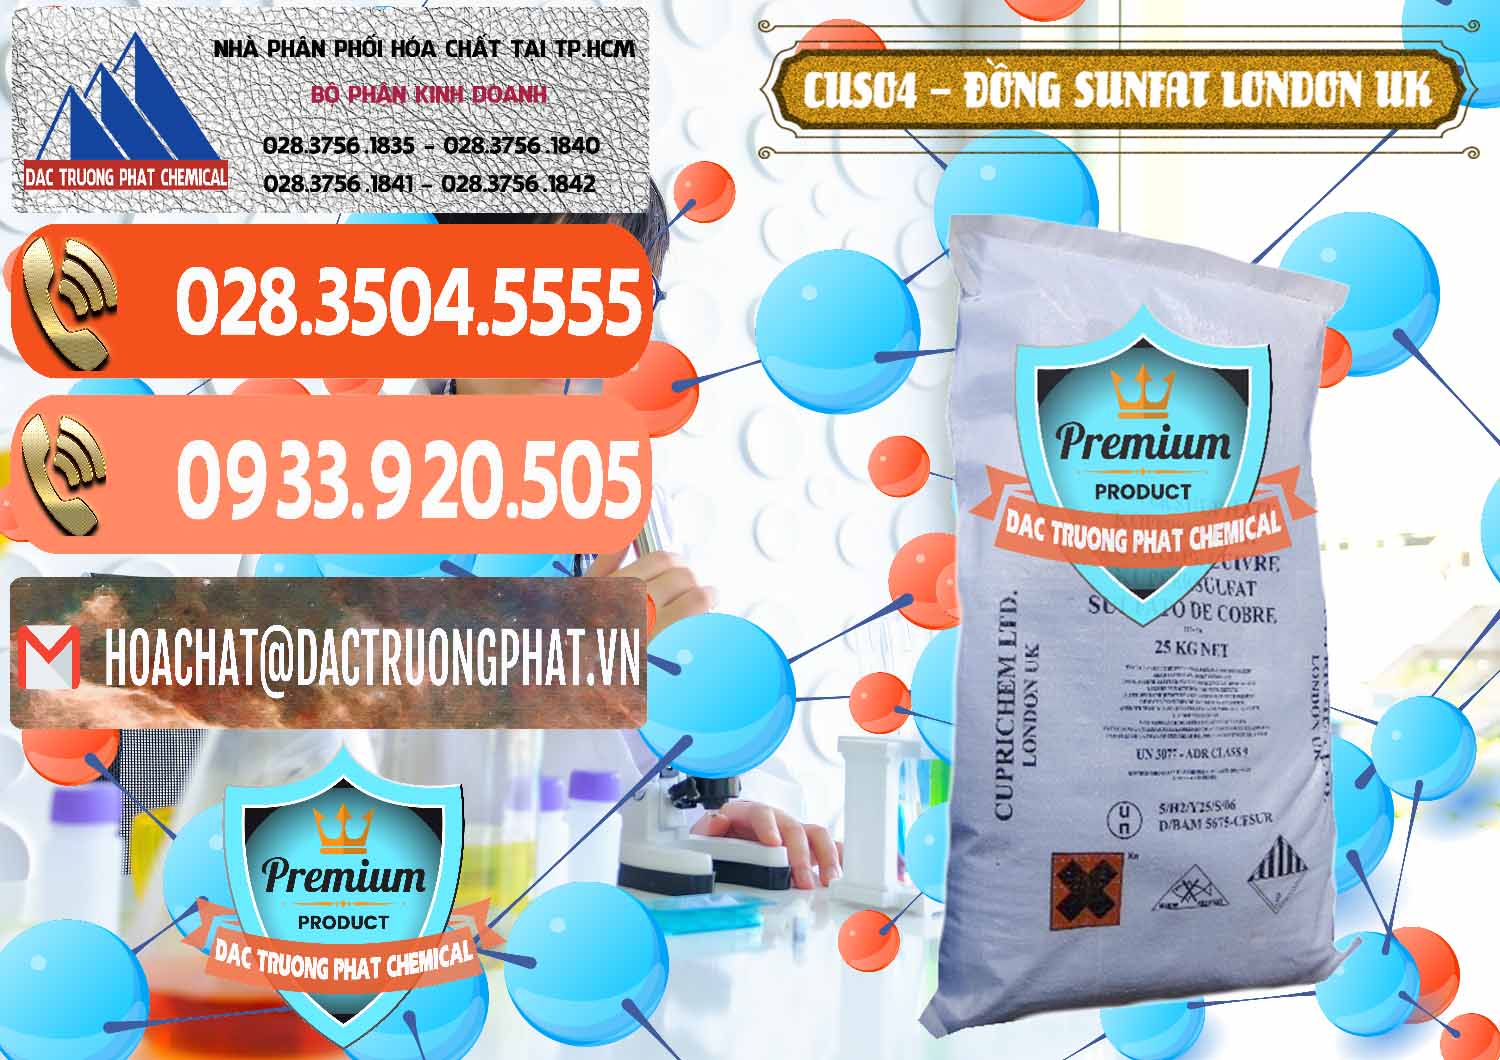 Chuyên kinh doanh - bán CuSO4 – Đồng Sunfat Anh Uk Kingdoms - 0478 - Đơn vị chuyên kinh doanh - phân phối hóa chất tại TP.HCM - hoachatmientay.com